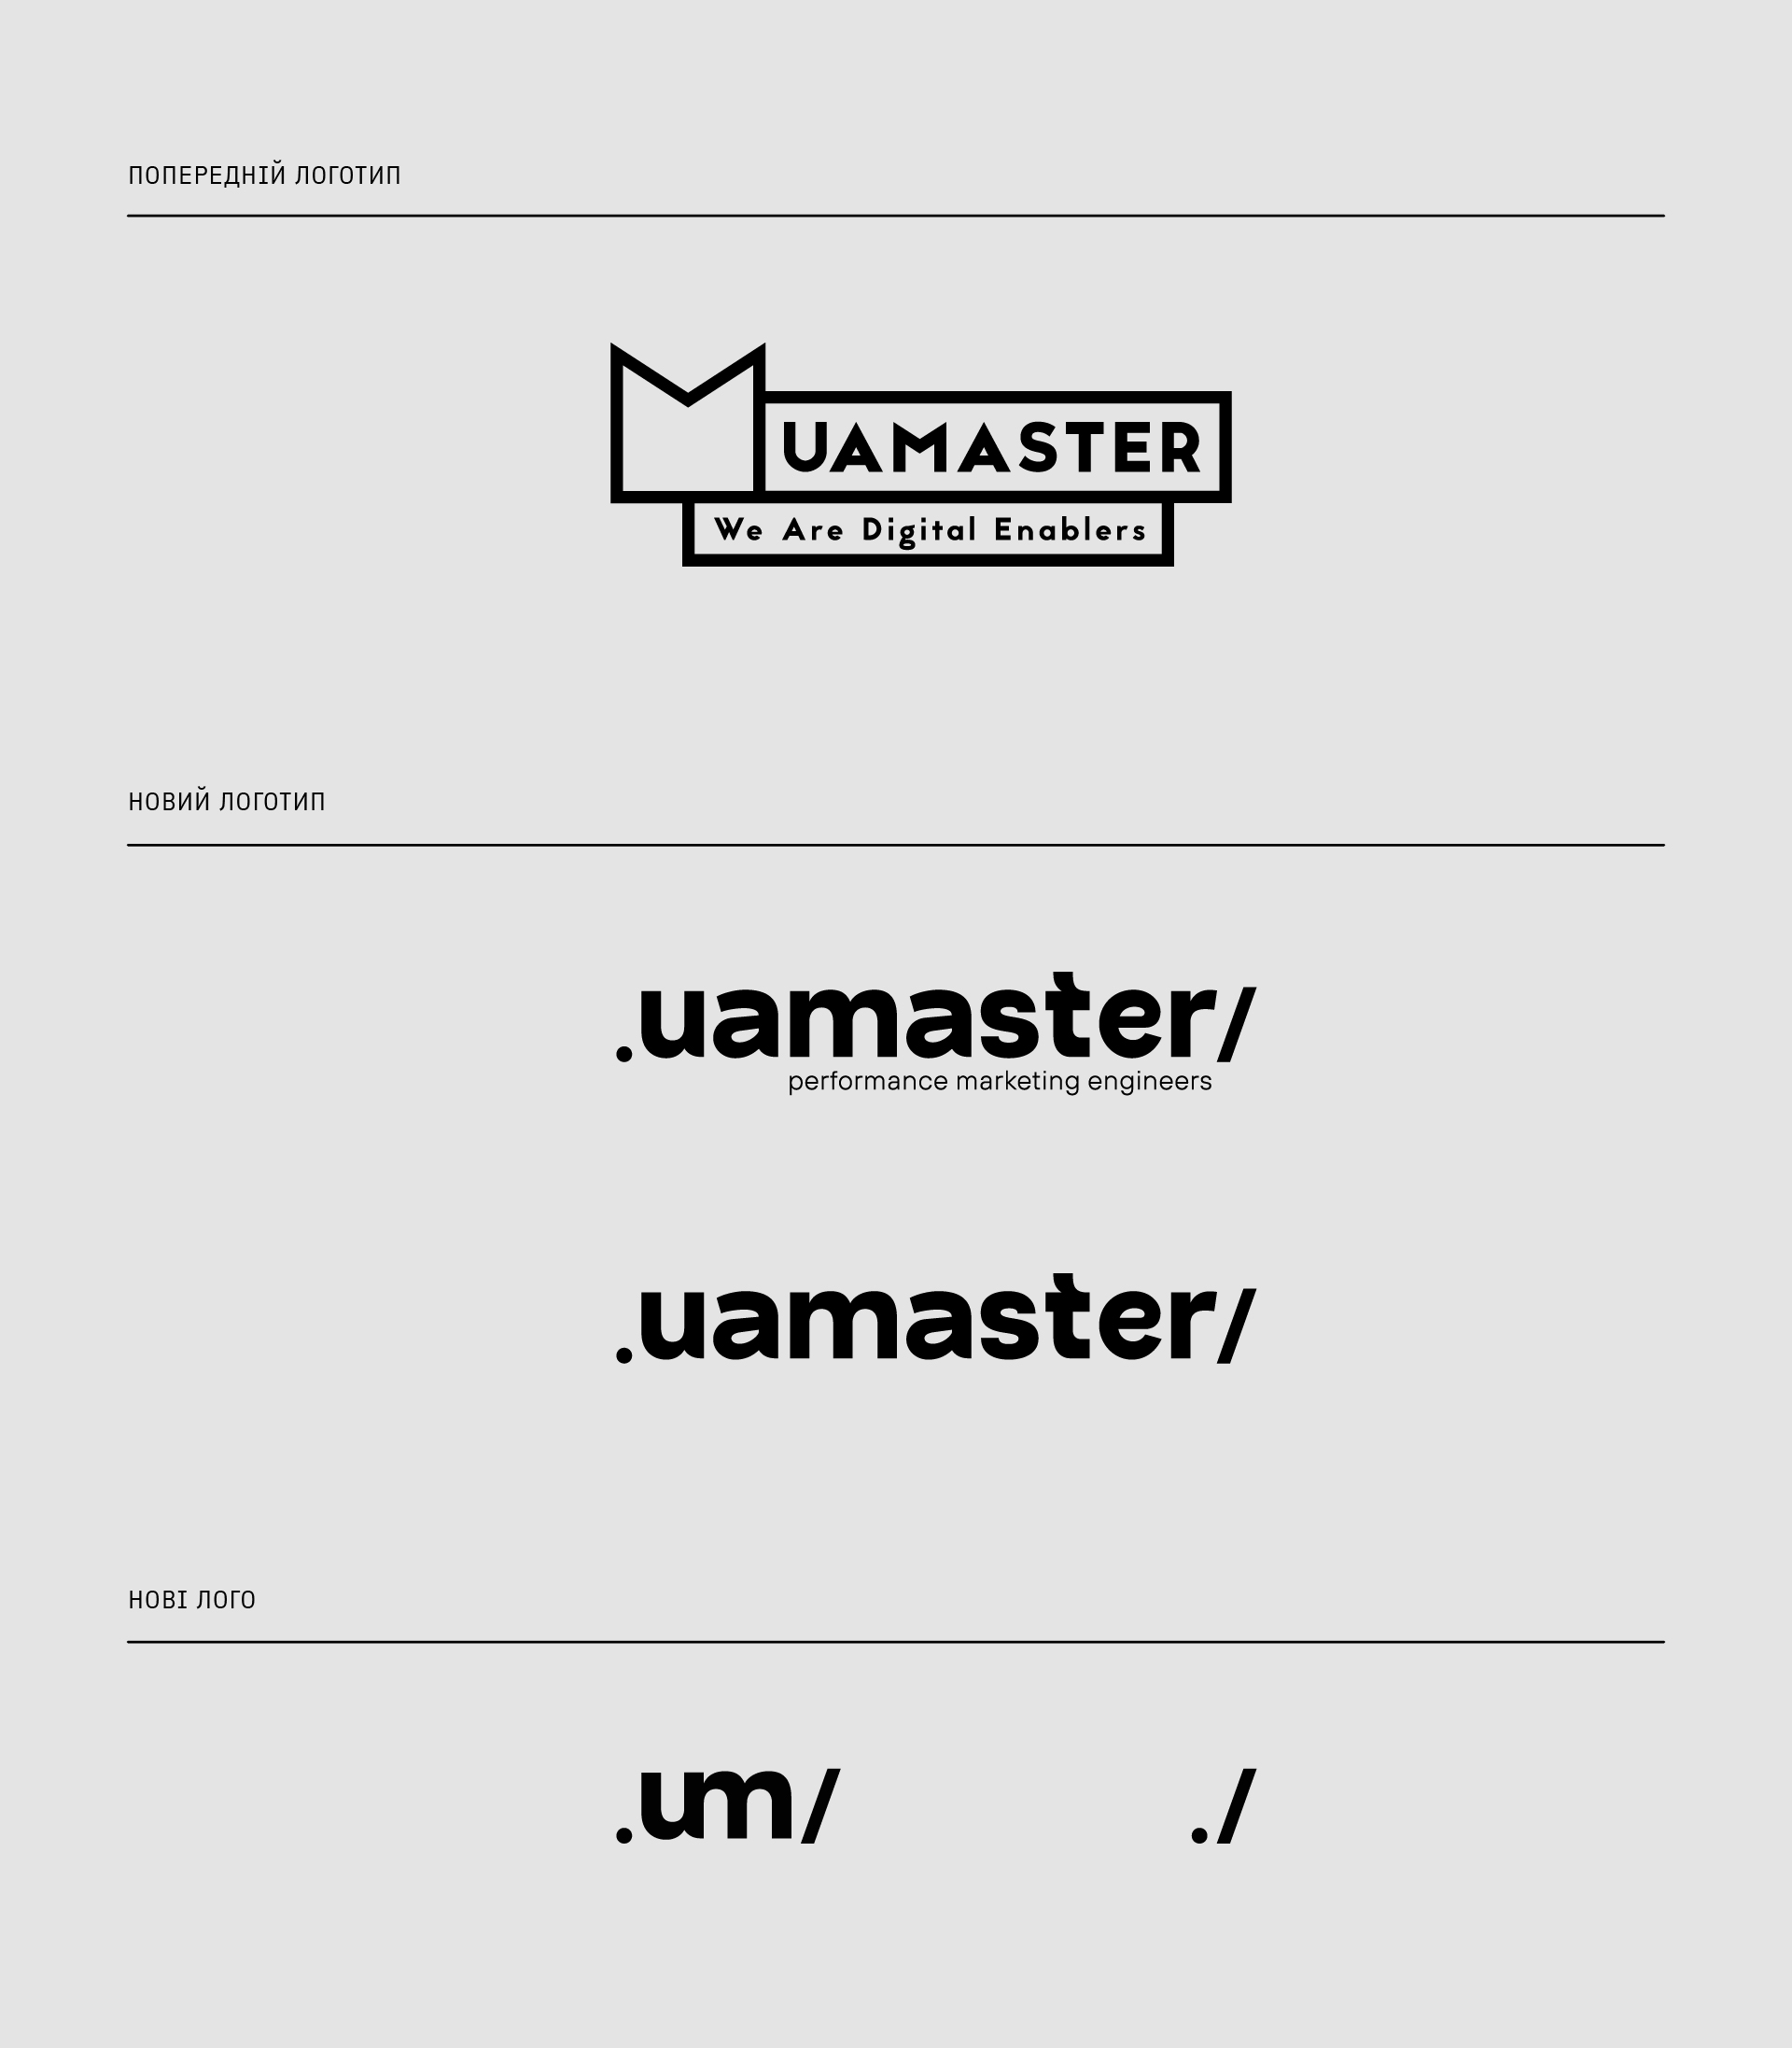 Uamaster rebranding